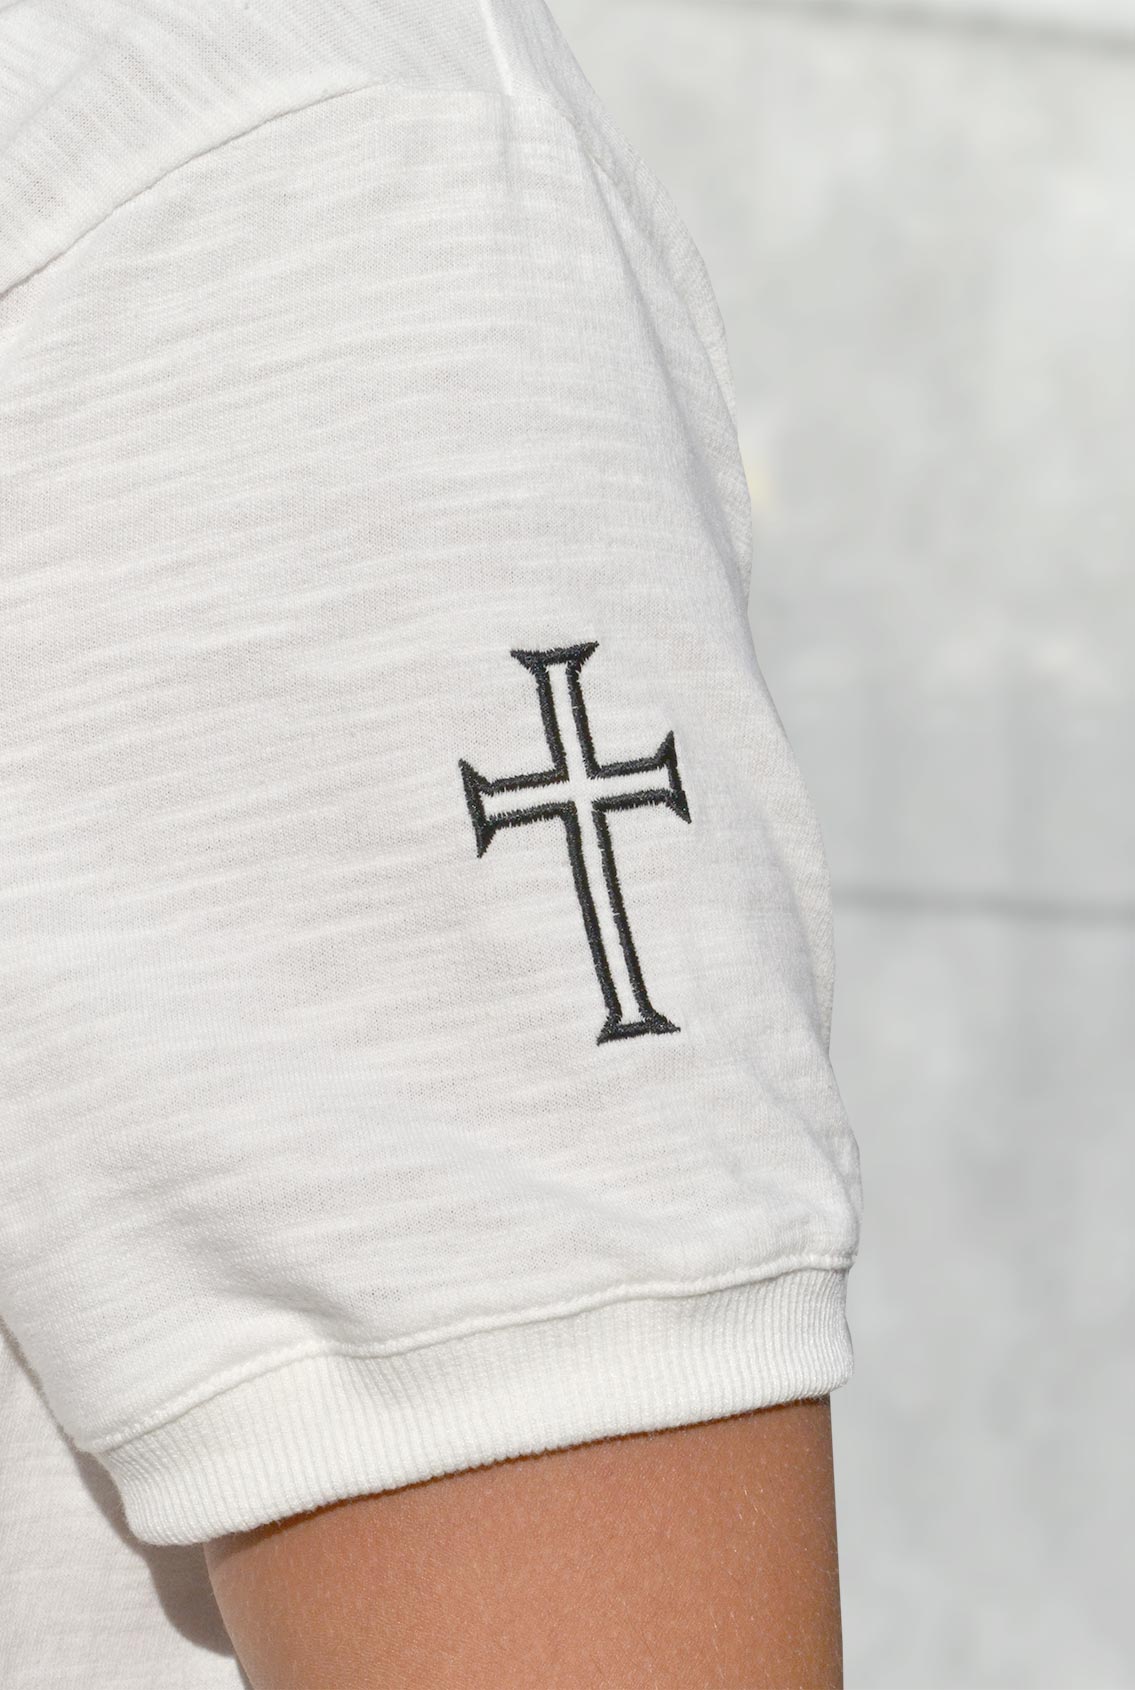 Крест на рукаве футболки